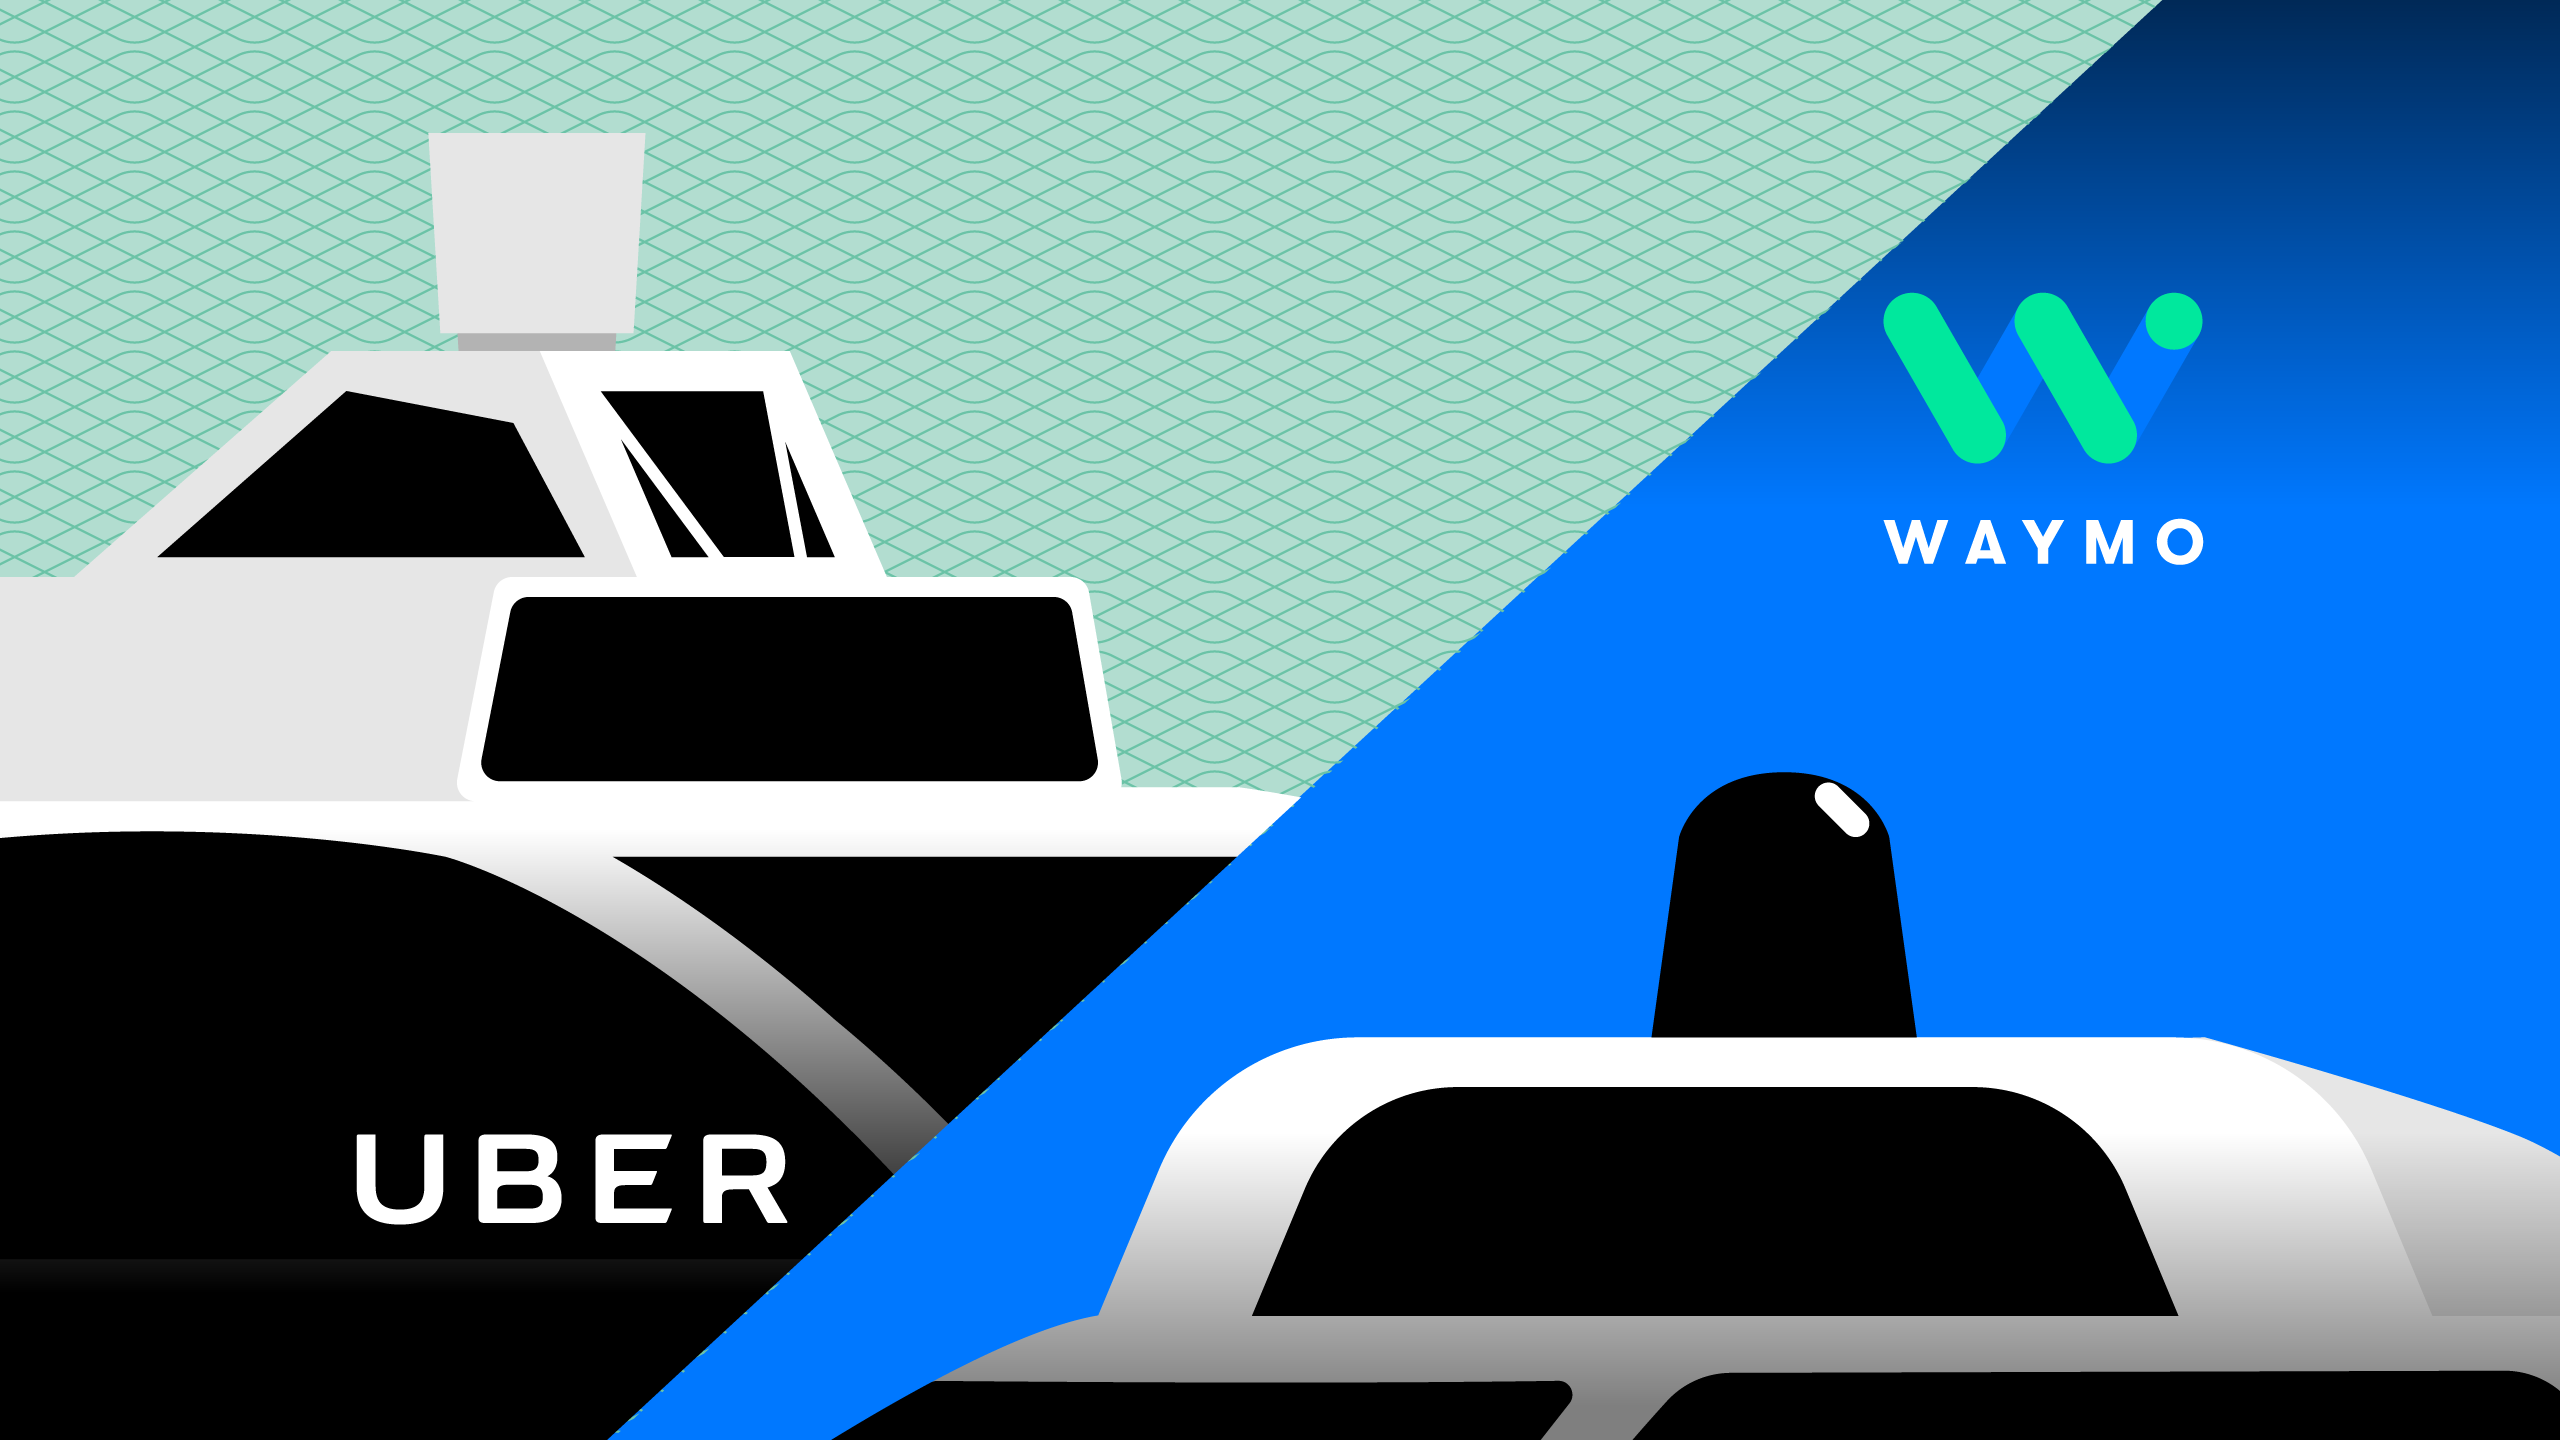 Uber settles Waymo lawsuit, promises not to use Waymo's trade secrets